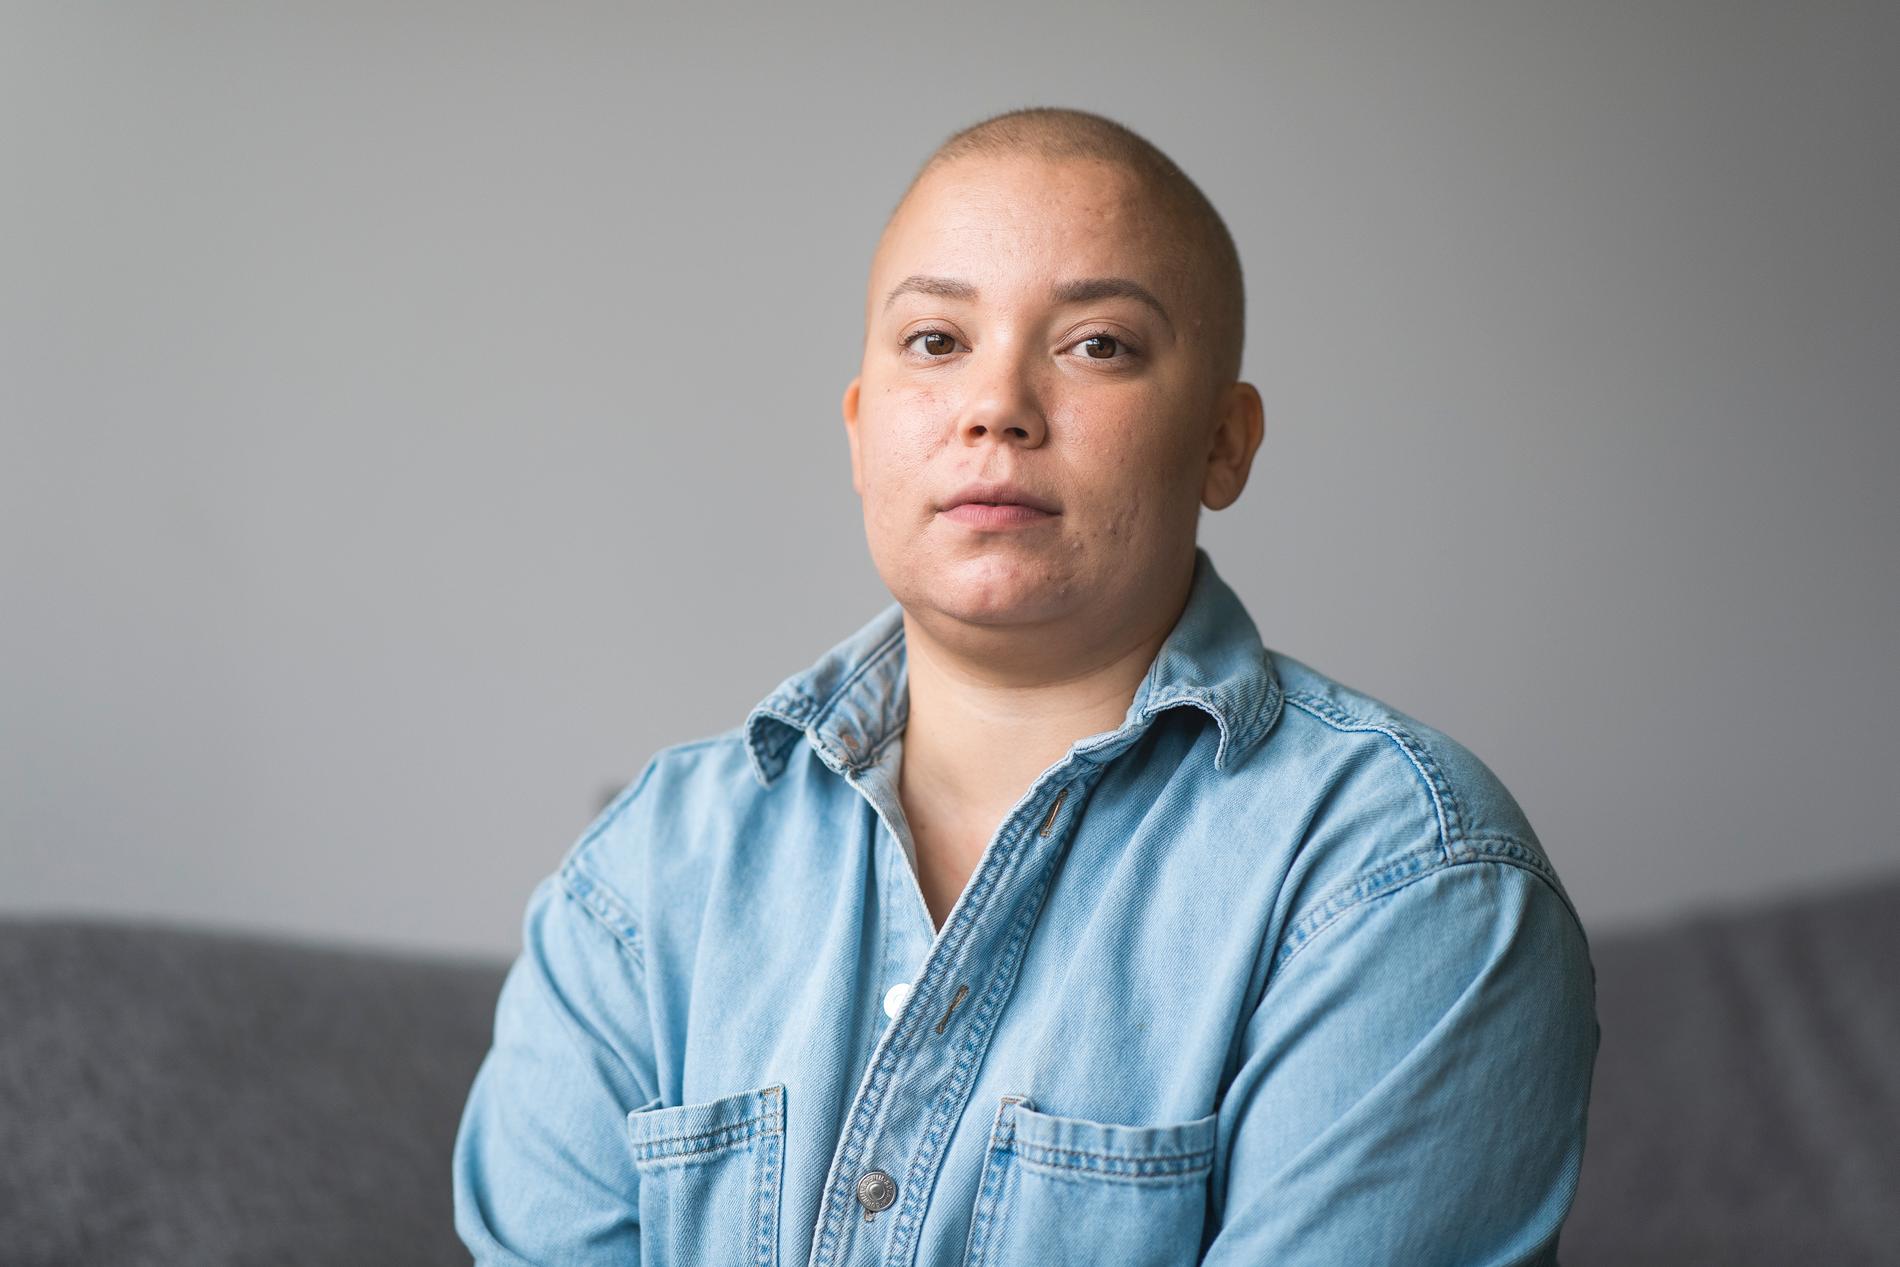 Mikaela har accepterat hon inte ser ut som hon gjorde innan cancern. Hon försöker att vara en förebild för yngre, och visa att det inte är fel att sakna hår eller bröst:  ”Det betyder inte att du är svag”.